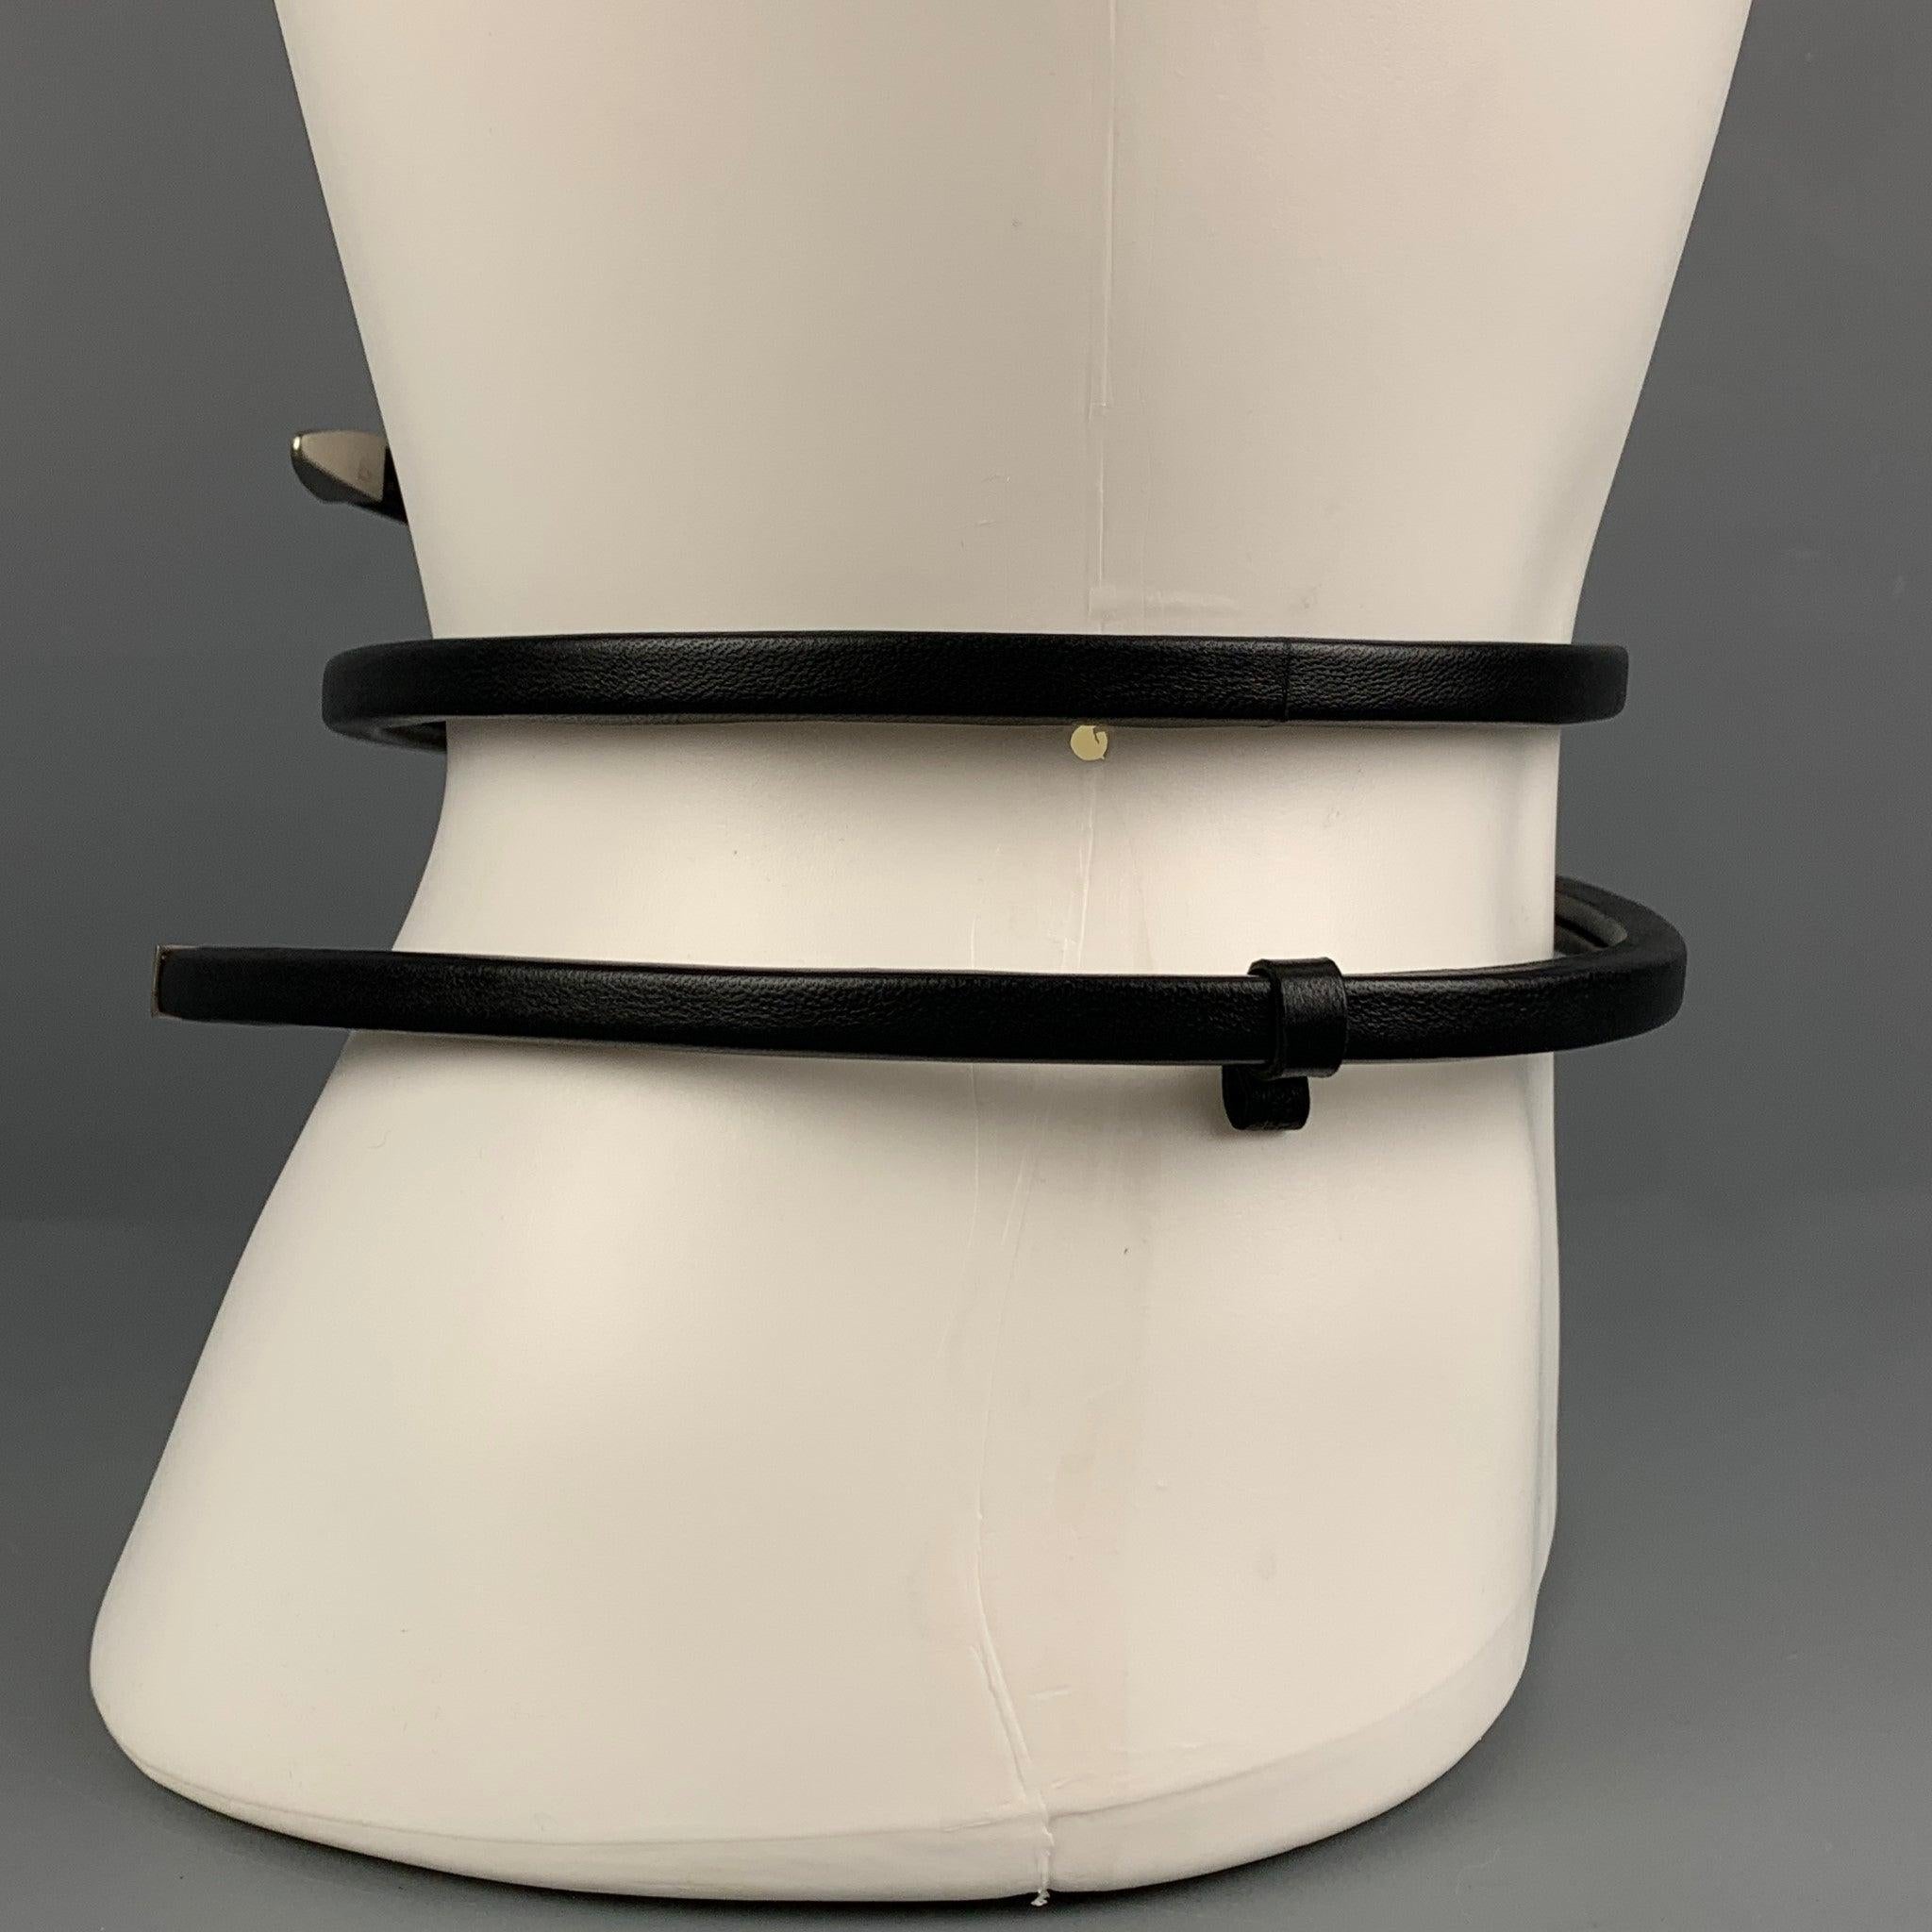 La ceinture 'Snake' de BOTTEGA VENETA est réalisée en cuir nappa enroulé et présente un design enveloppant ainsi que des embouts en argent sterling. Fabriquées en Italie.
Excellent
Etat d'occasion. 

Marqué :   Aucune taille n'est indiquée. Hauteur